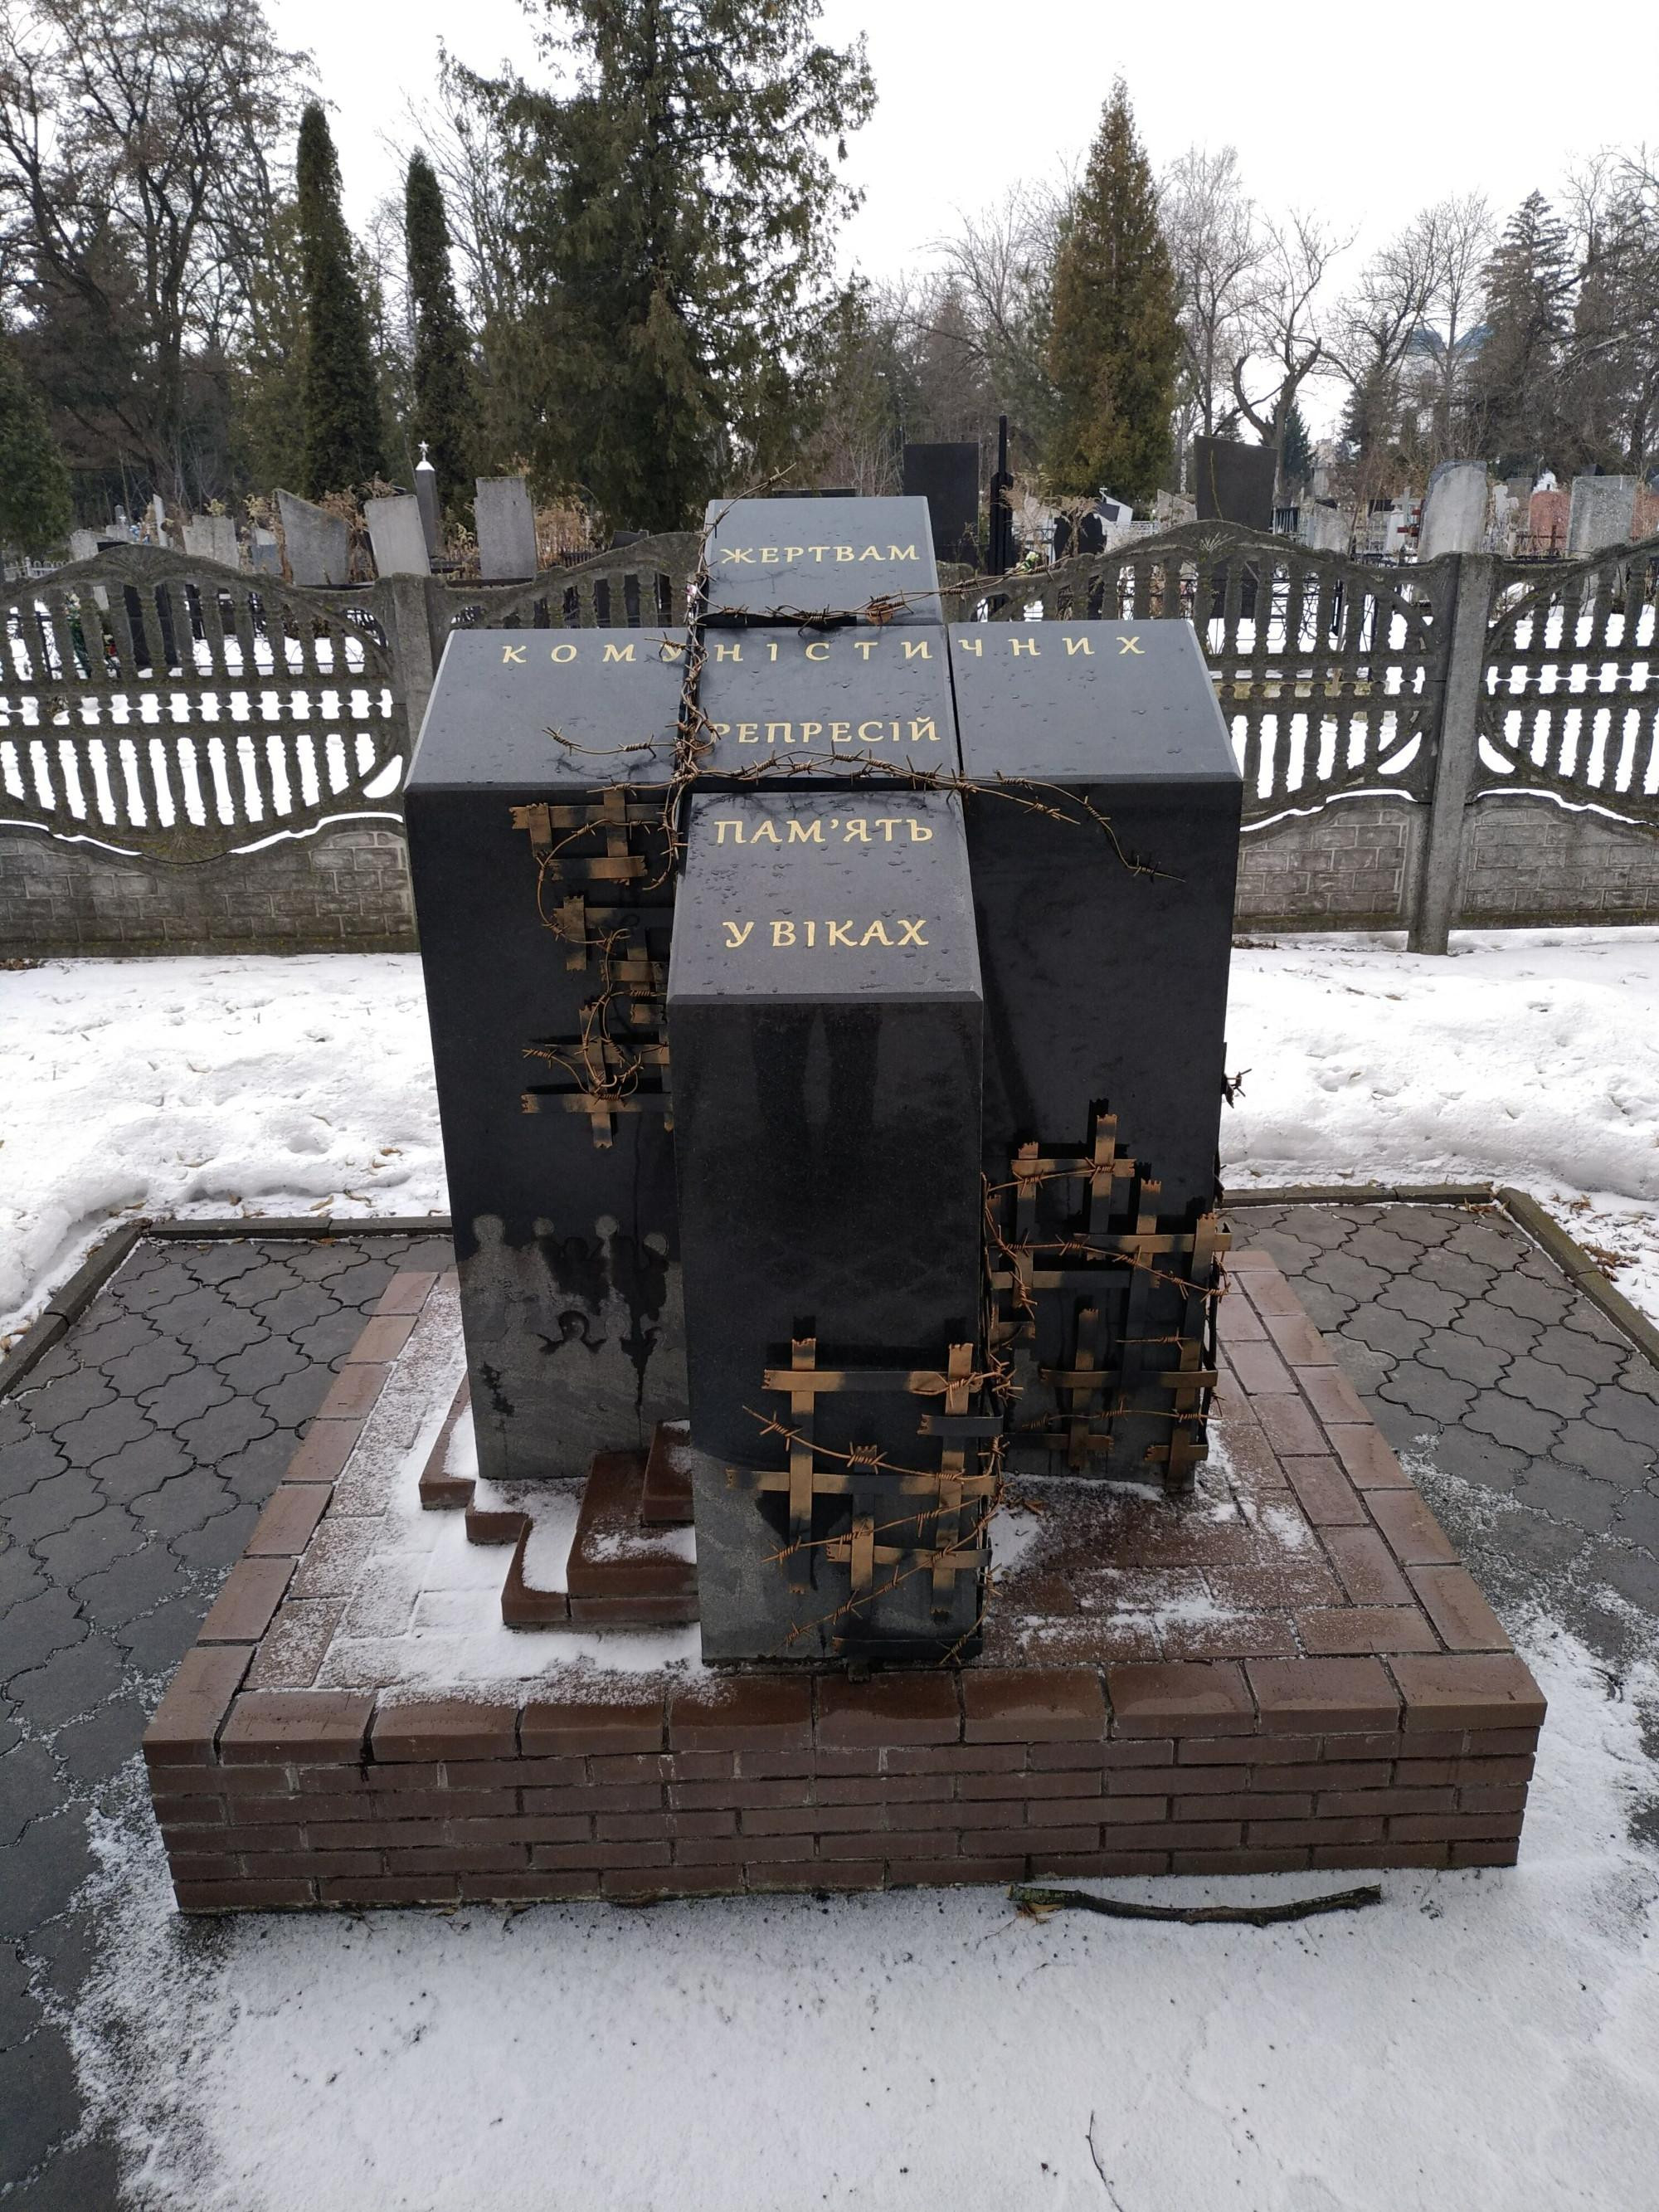 «Жертвам комуністичних репресій пам`ять у віках» <br/>
(Суми, Україна)